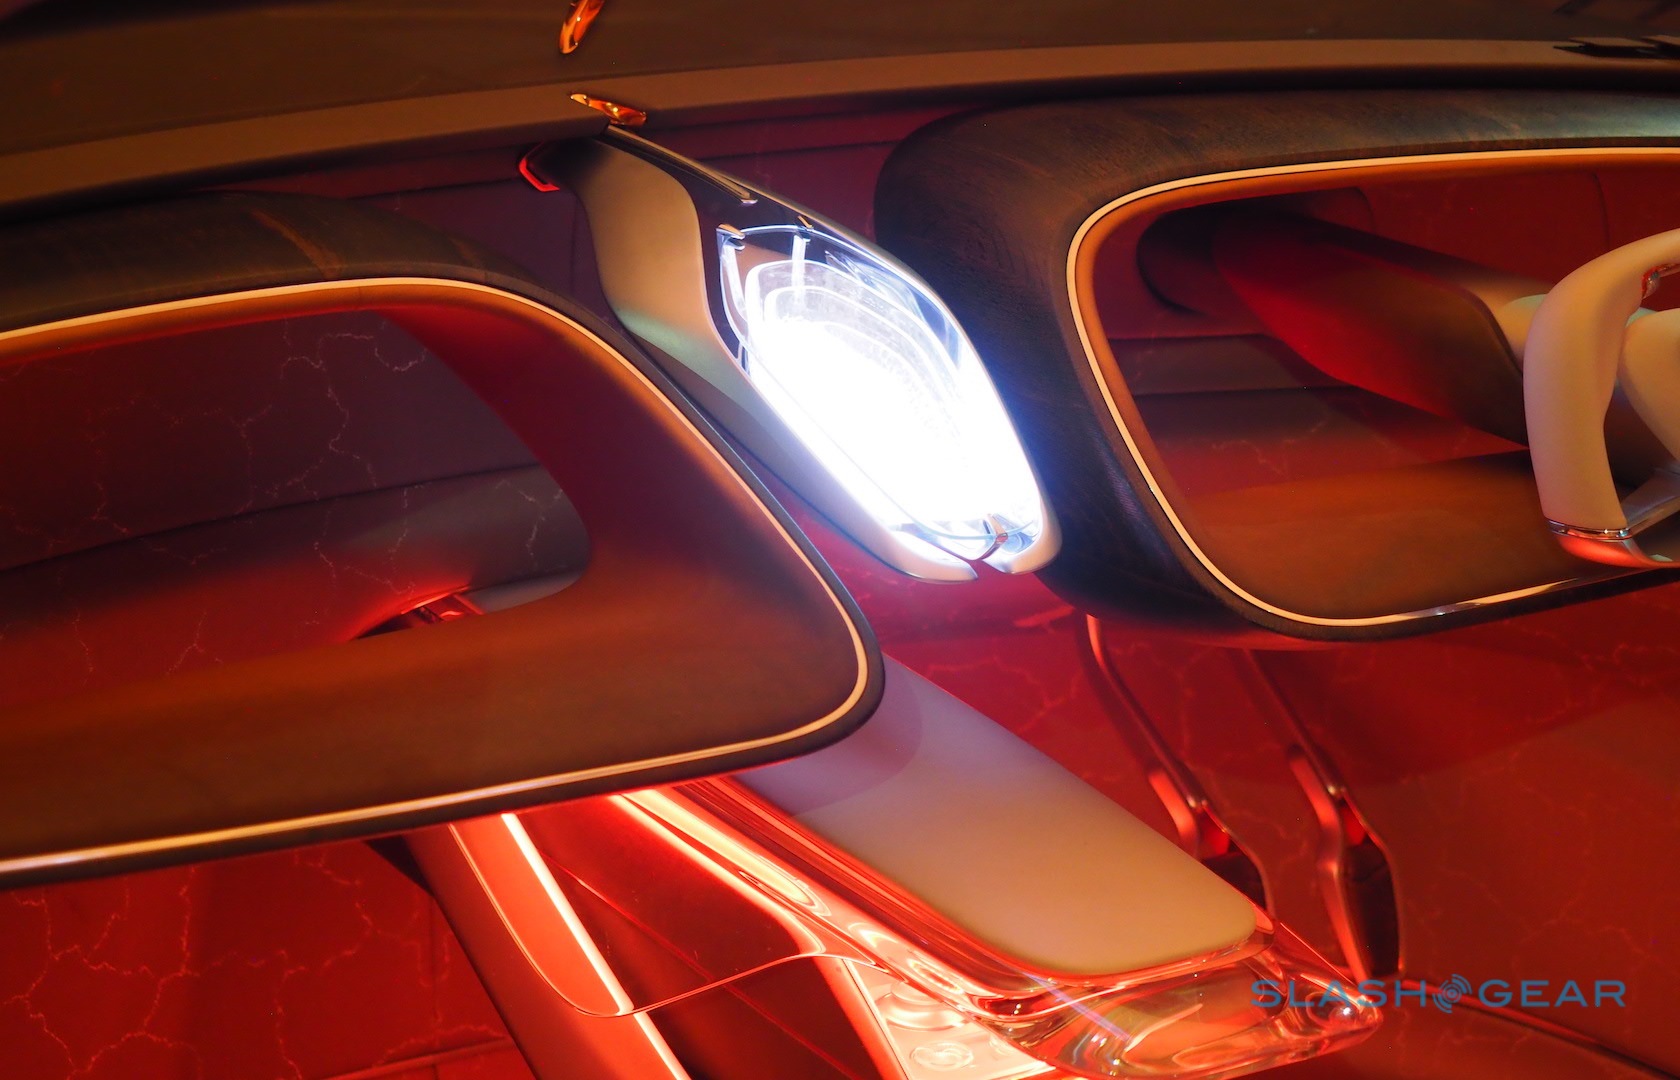 Bentley EXP 100 GT Gallery - SlashGear1680 x 1080